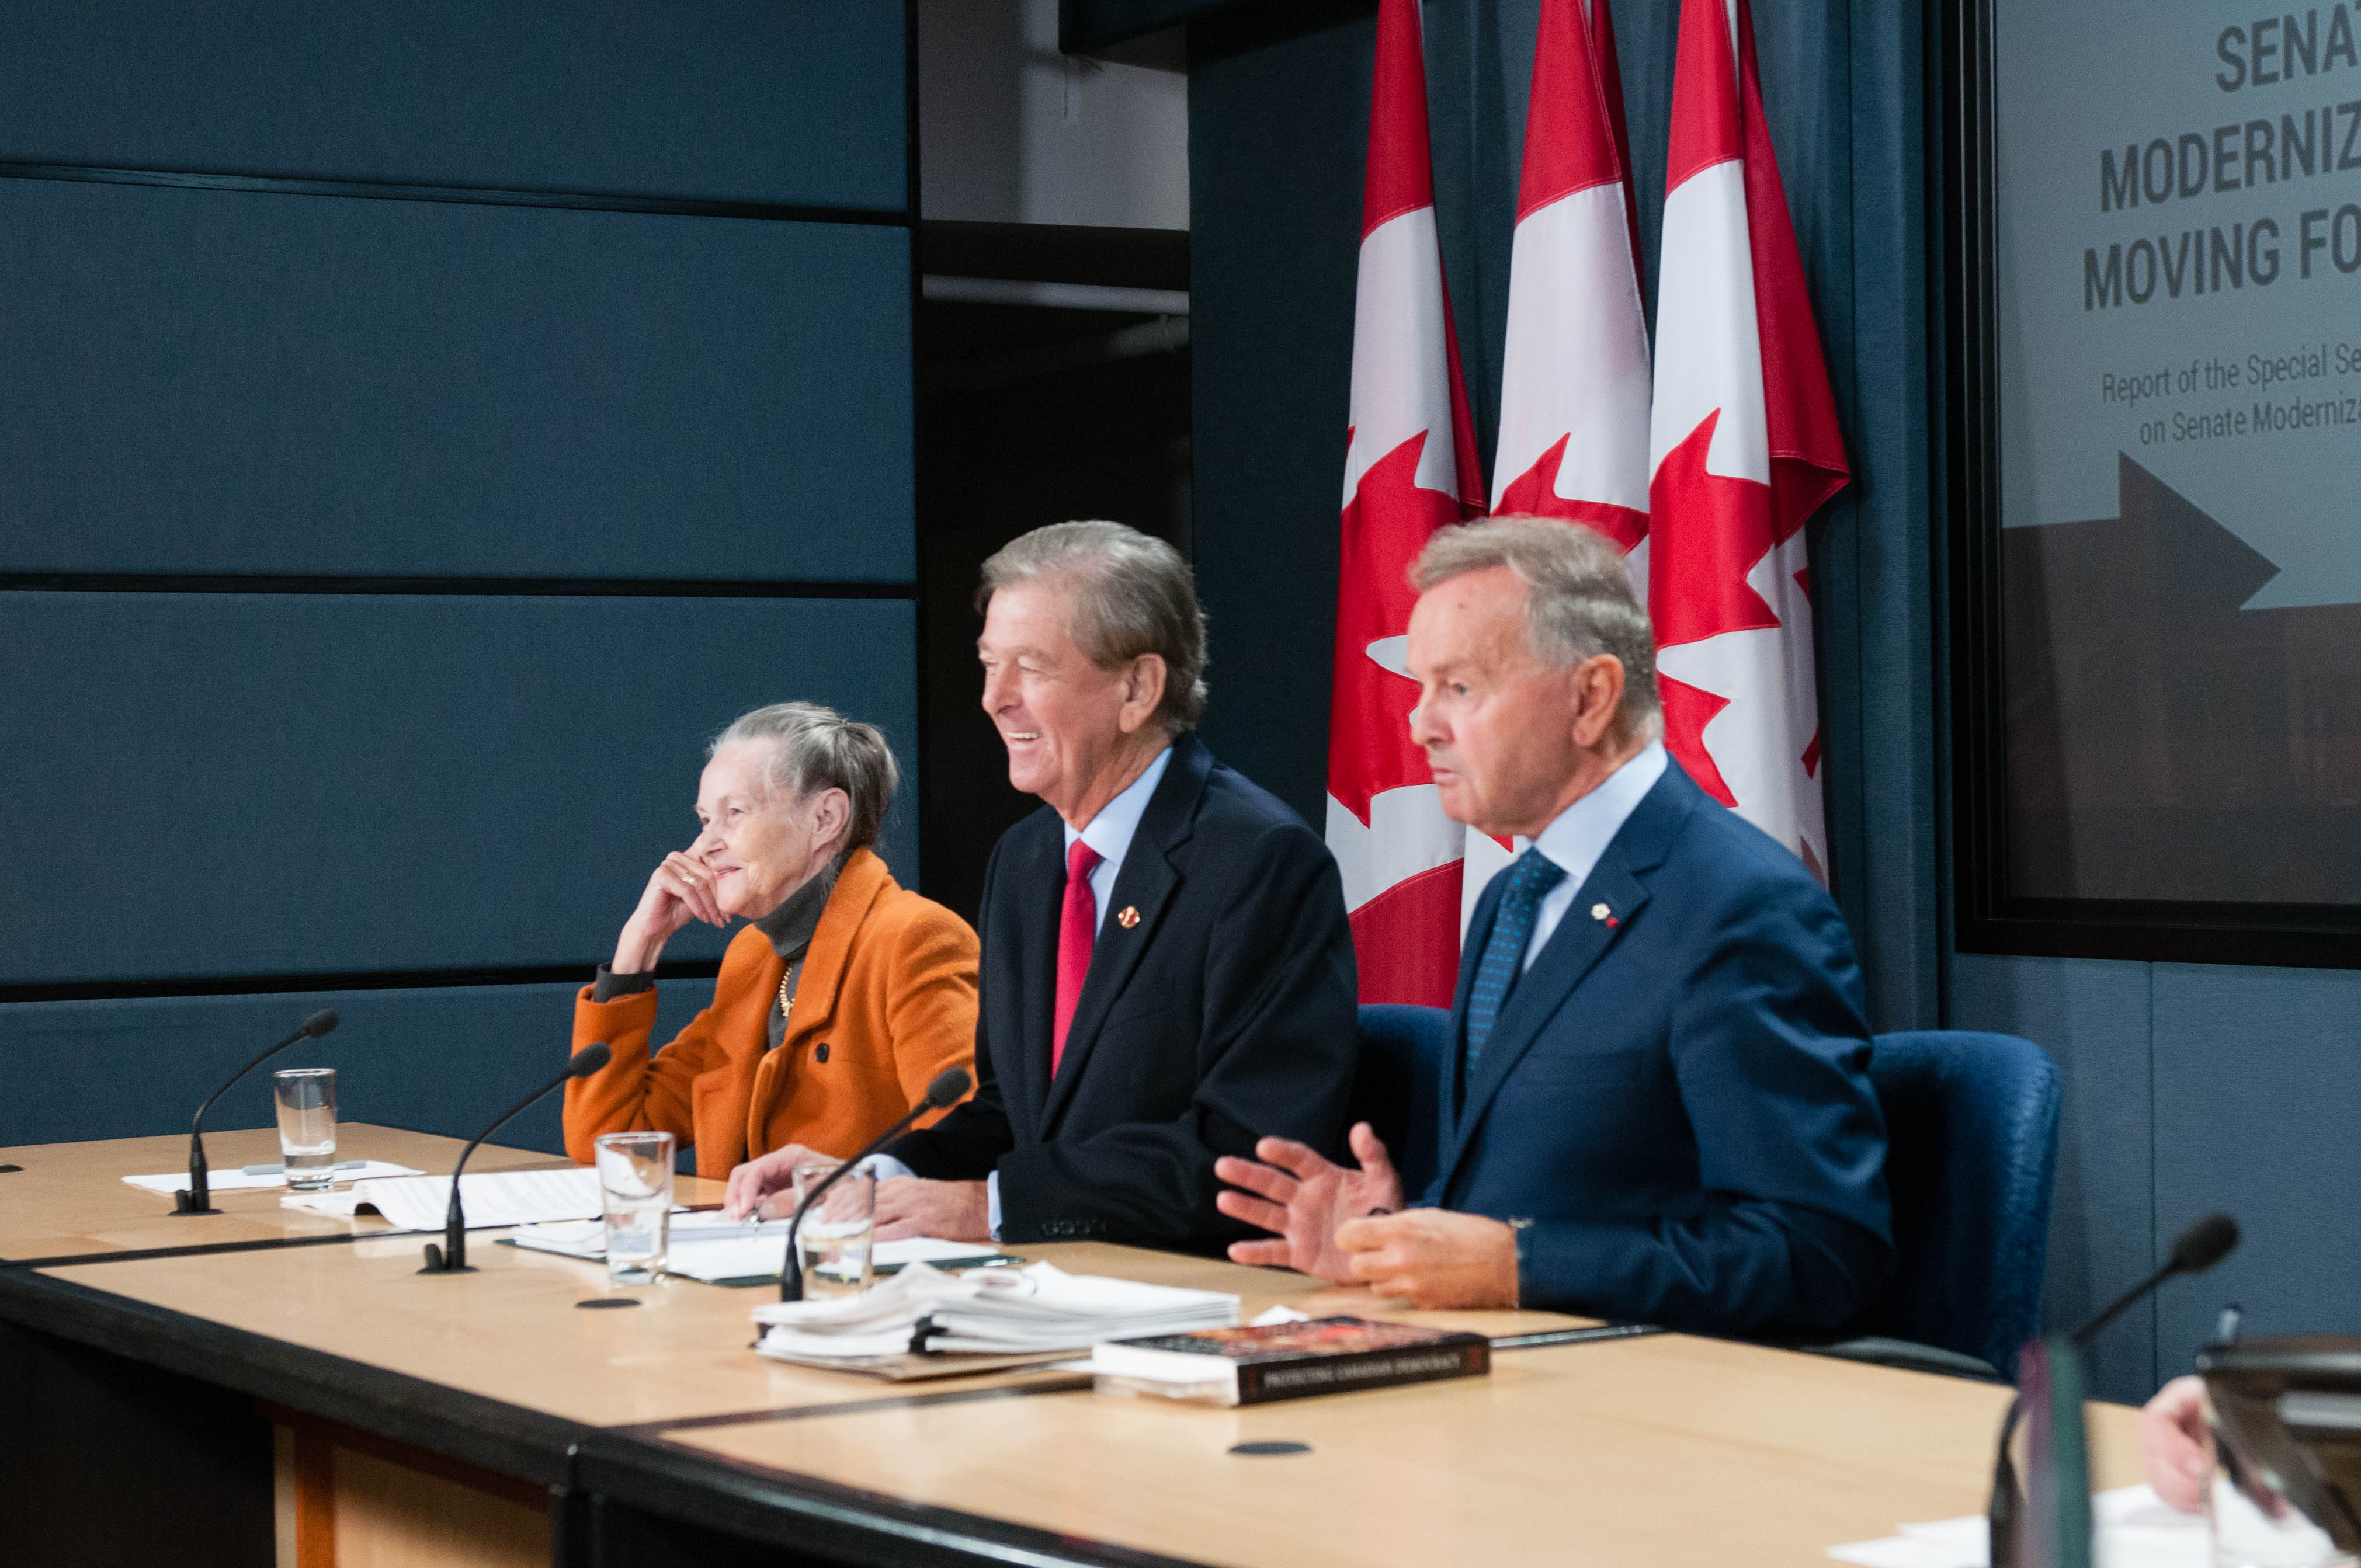 Photo, de gauche à droite: les sénateurs Elaine McCoy, Thomas McInnis et Serge Joyal annoncent la publication du rapport sur la modernisation du Sénat lors d’une conférence de presse à Ottawa le 4 octobre, 2016.